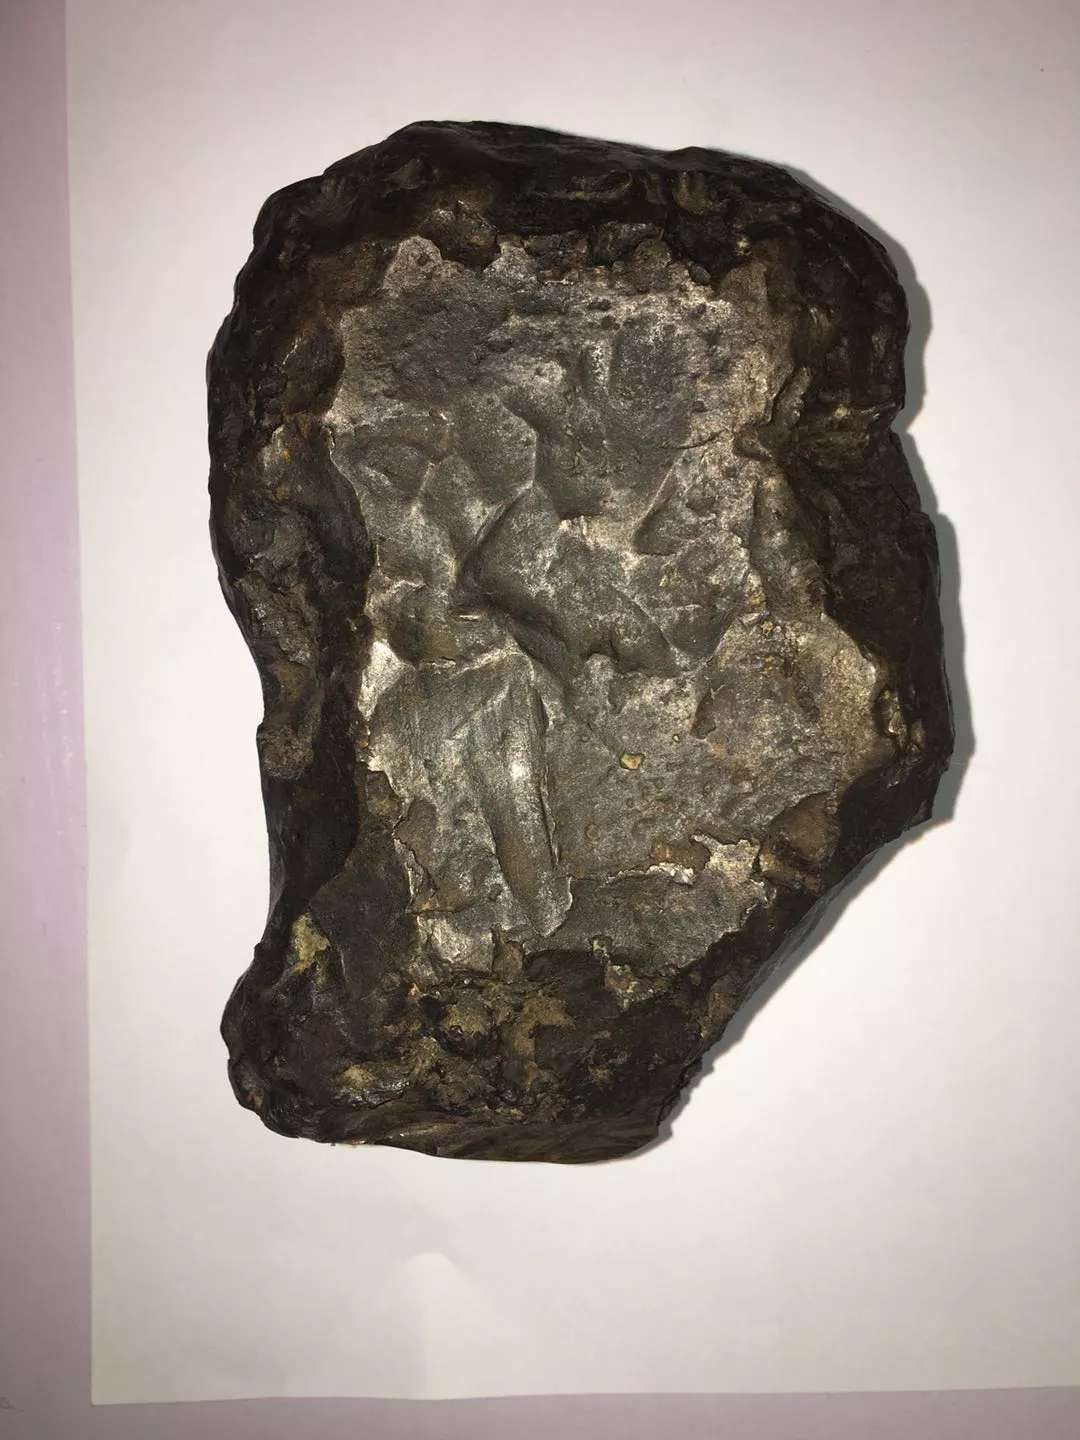 私人藏品中发现车里雅宾斯克博物馆失窃陨石碎片 - 2017年7月19日, 俄罗斯卫星通讯社